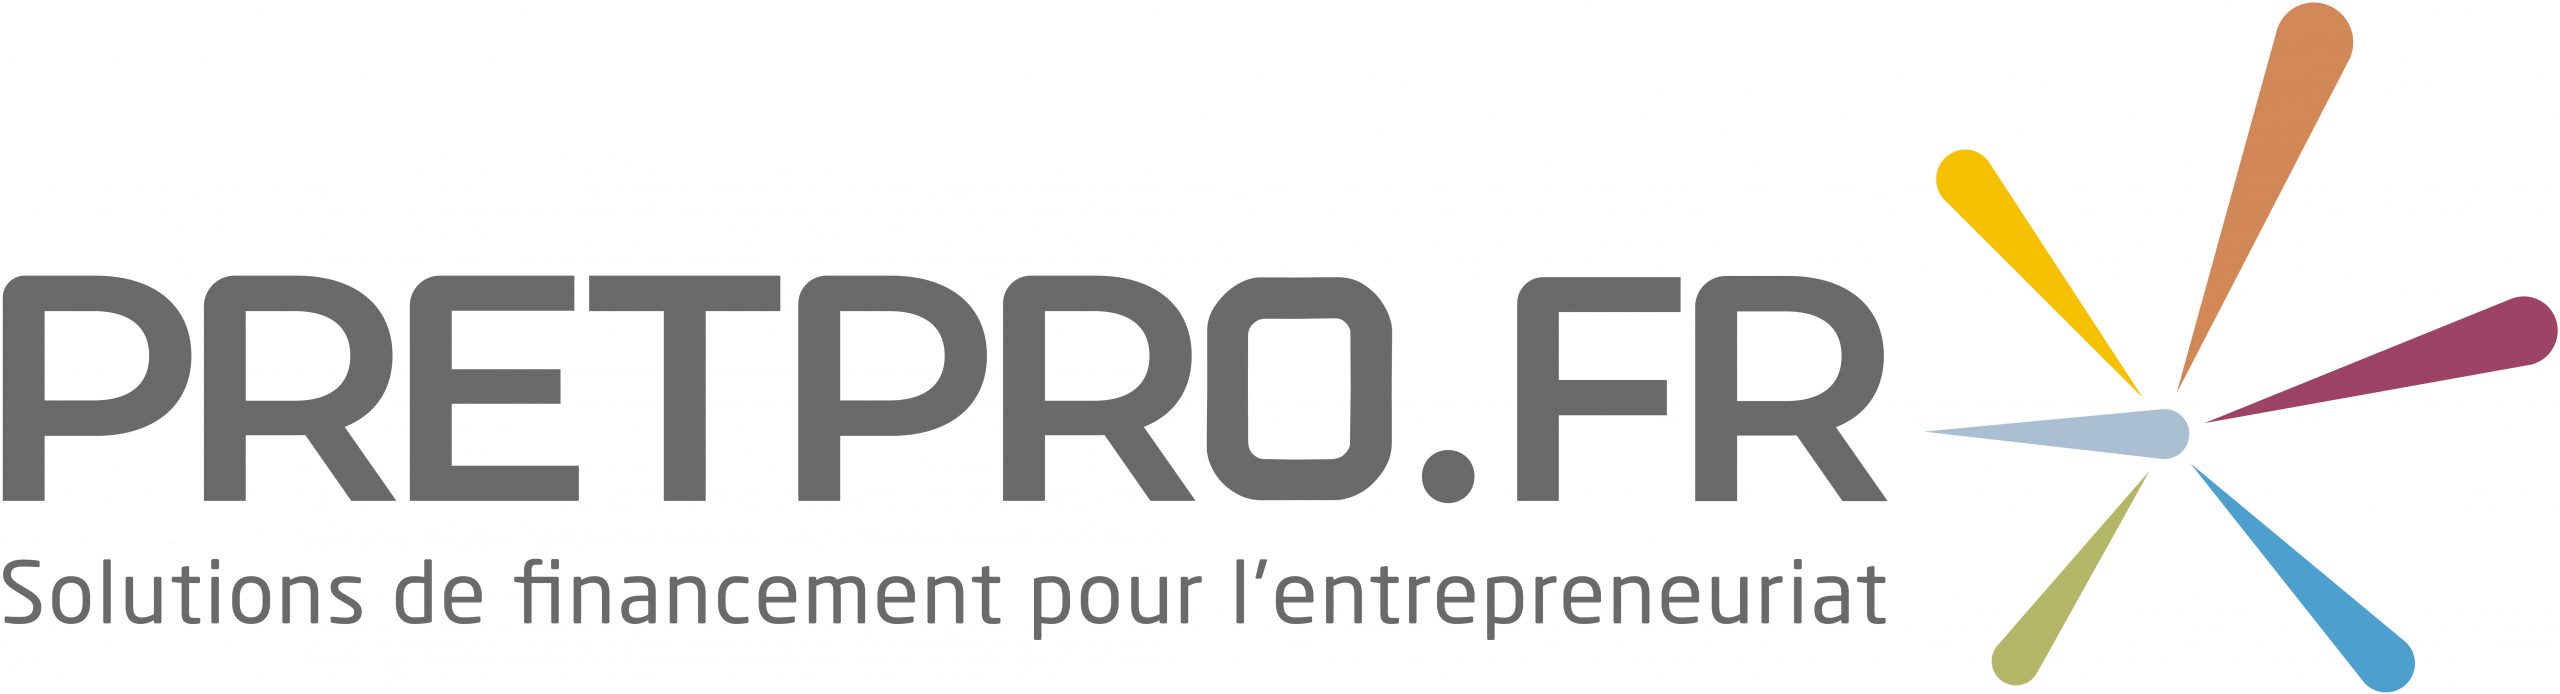 Pretpro.fr – Centre-val-de-loire